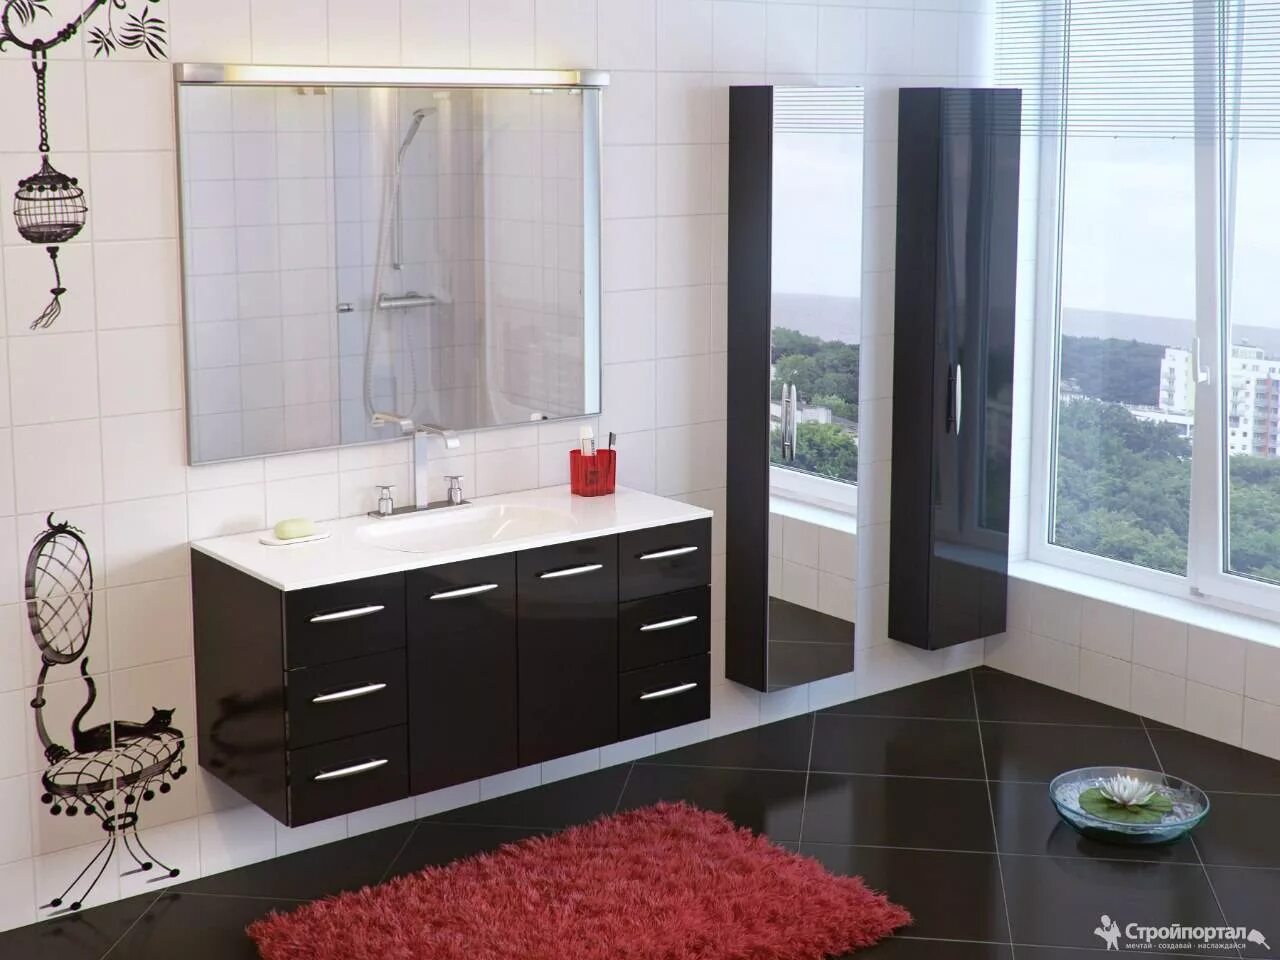 Мебель для ванной комнаты. Красивая мебель для ванной комнаты. Комплект мебели в ванную комнату. Стильная ванная мебель. Авито мебель для ванны